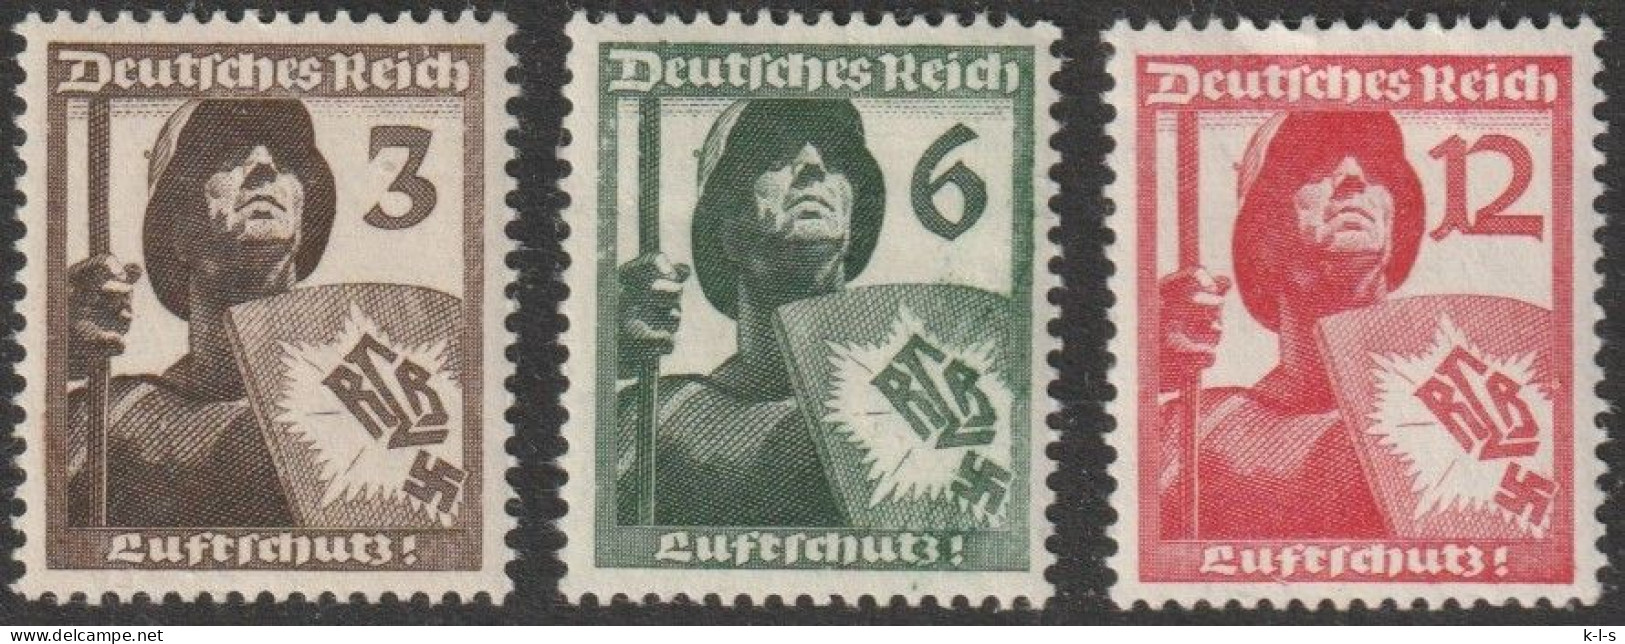 Deut. Reich: 1937, Mi. Nr. 643-45, Luftschutz.  **/MNH - Nuovi